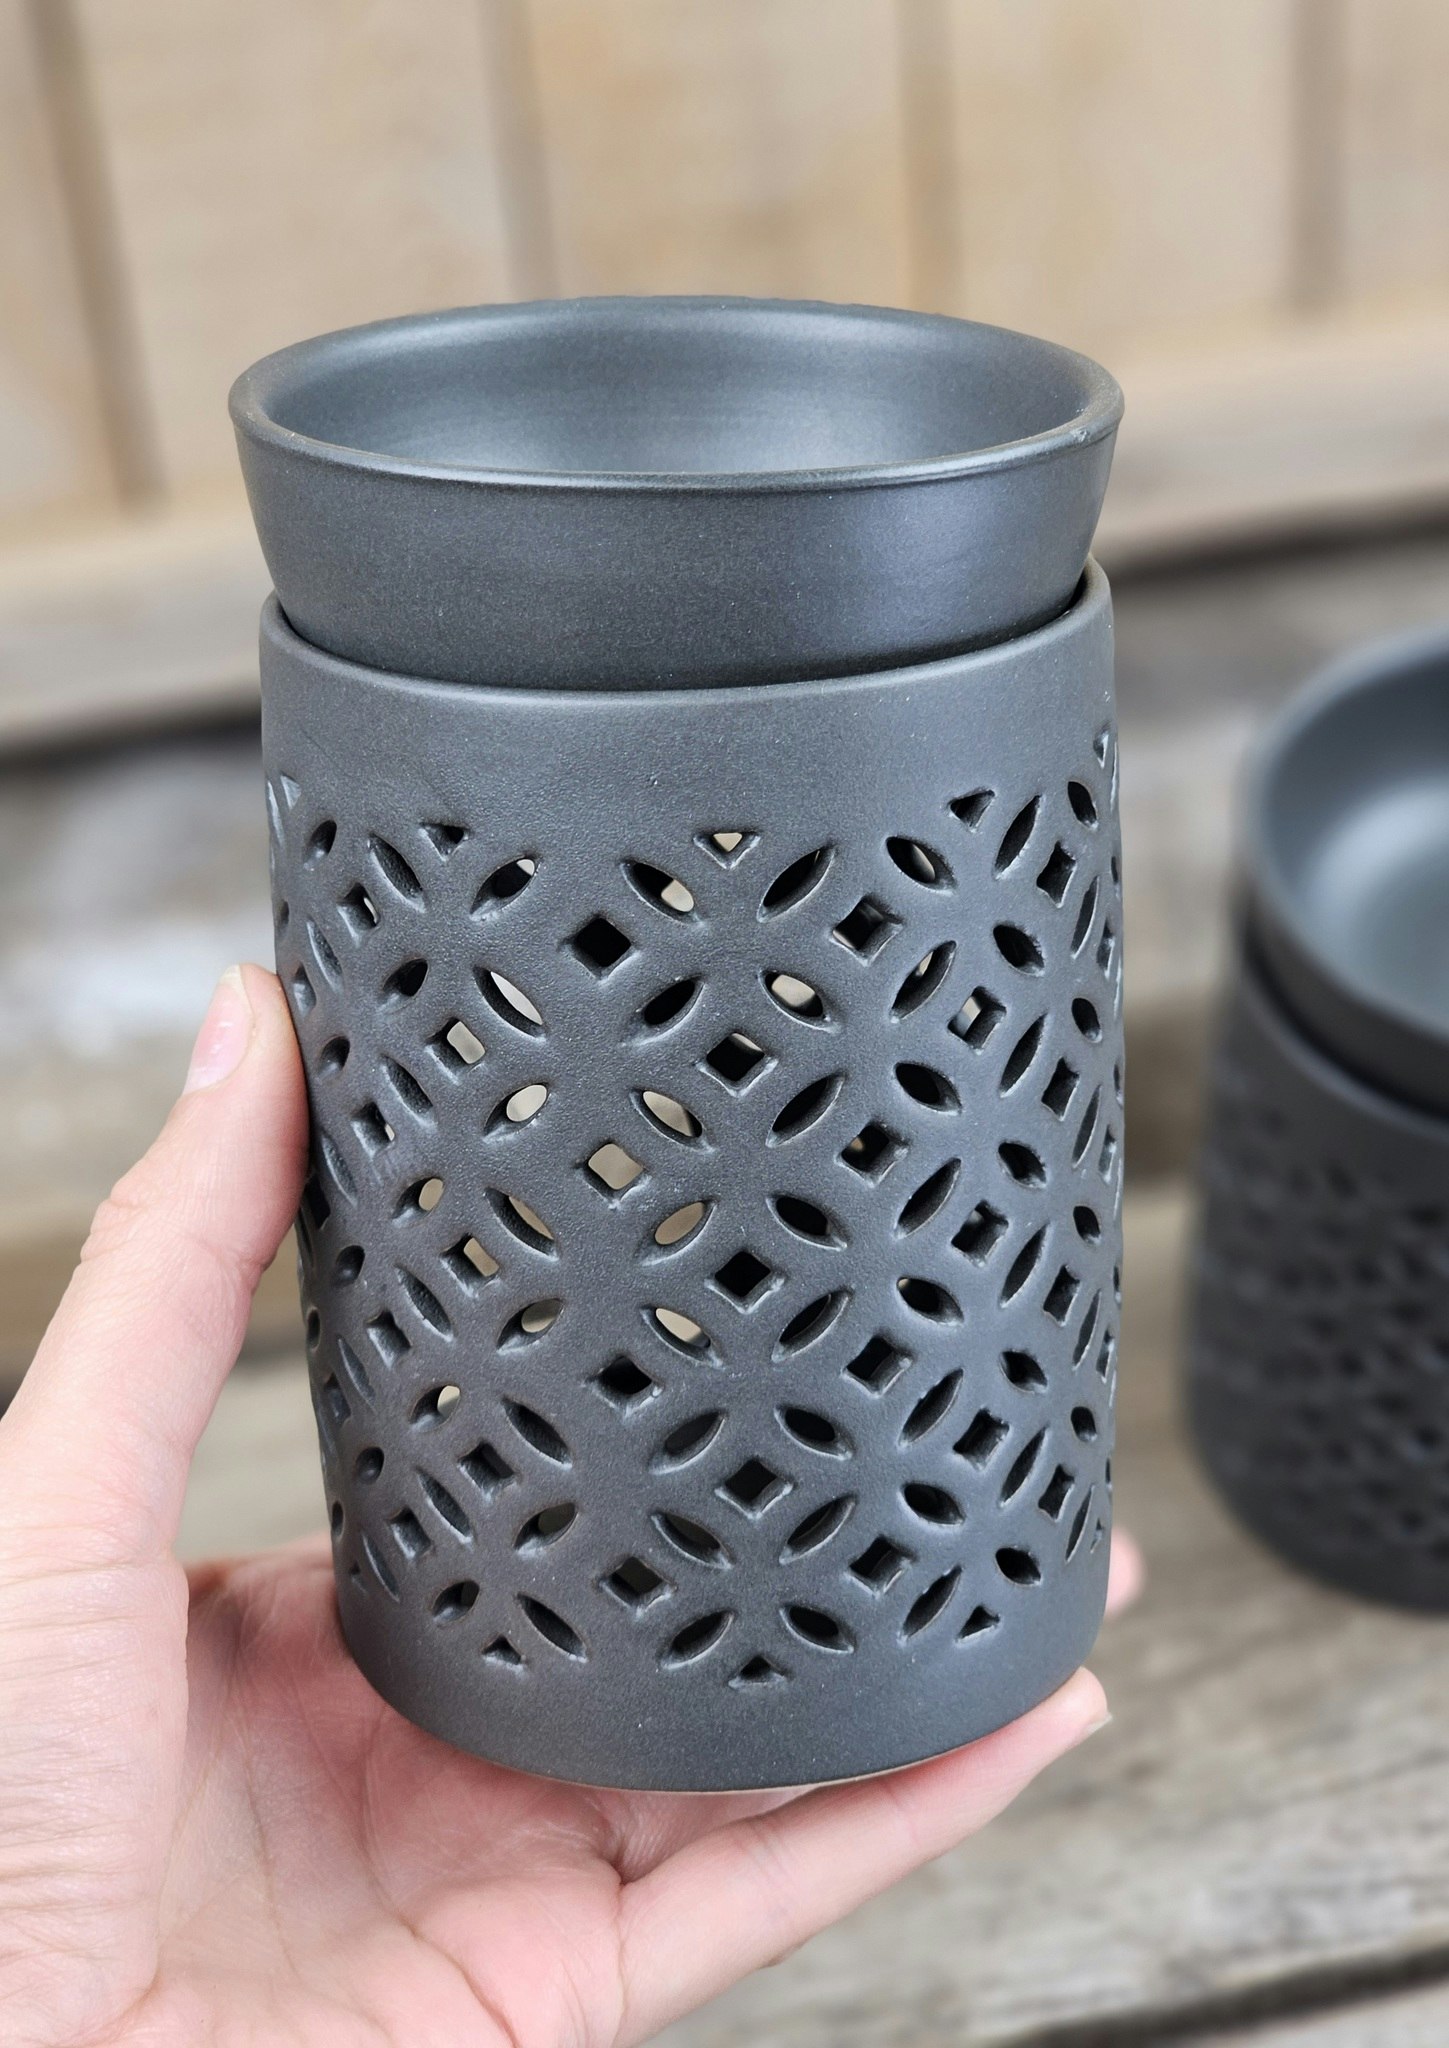 Oljebrännare, Aroma diffuser svart keramik med mönster